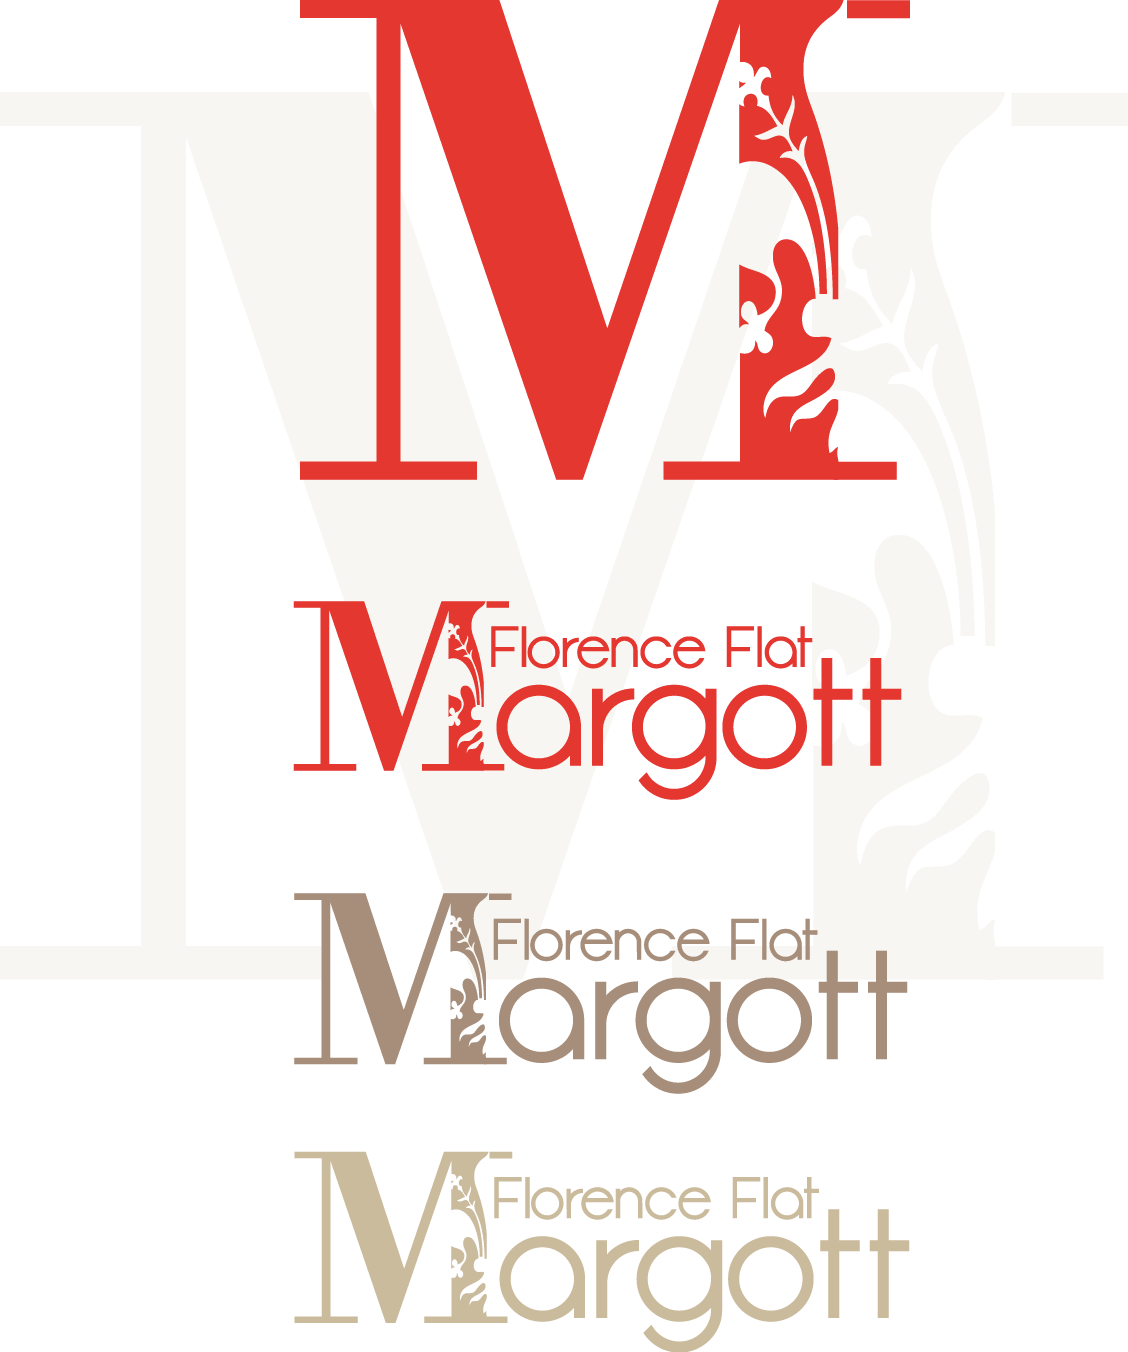 Project web site for a Florence design designer graphic Marcella Fiore